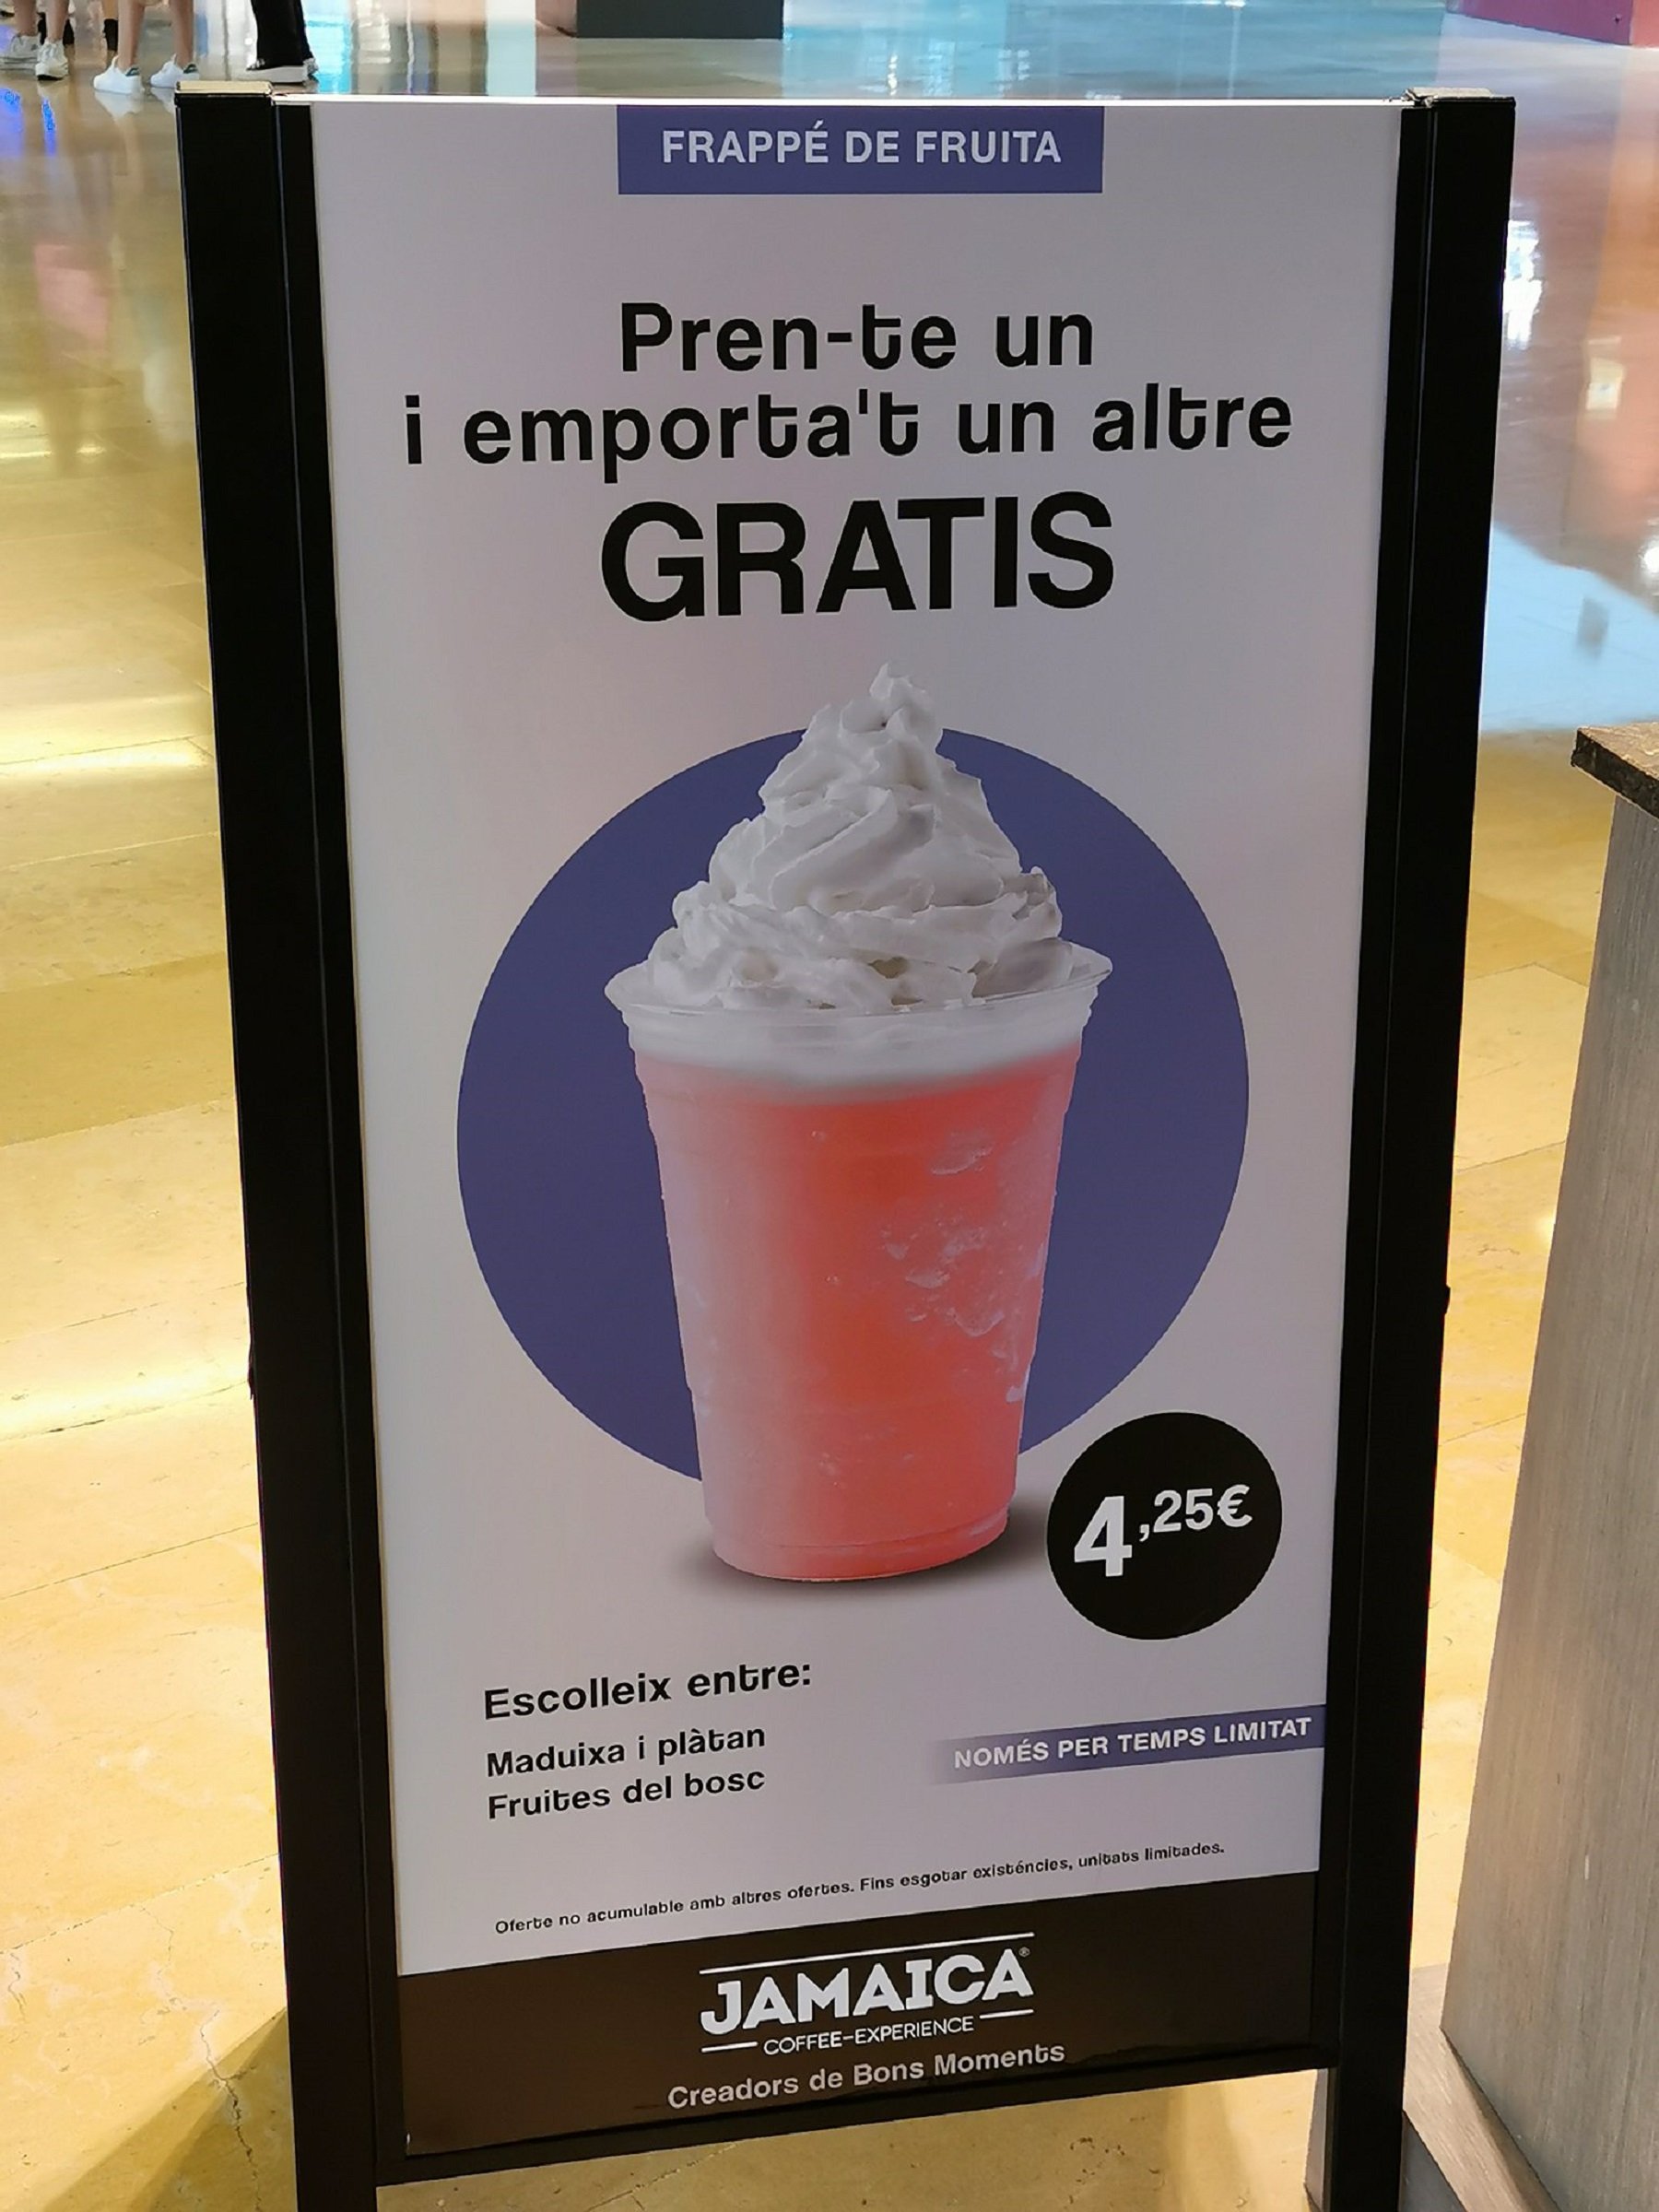 Rècord d'errors ortogràfics en català en un anunci d'una cafeteria